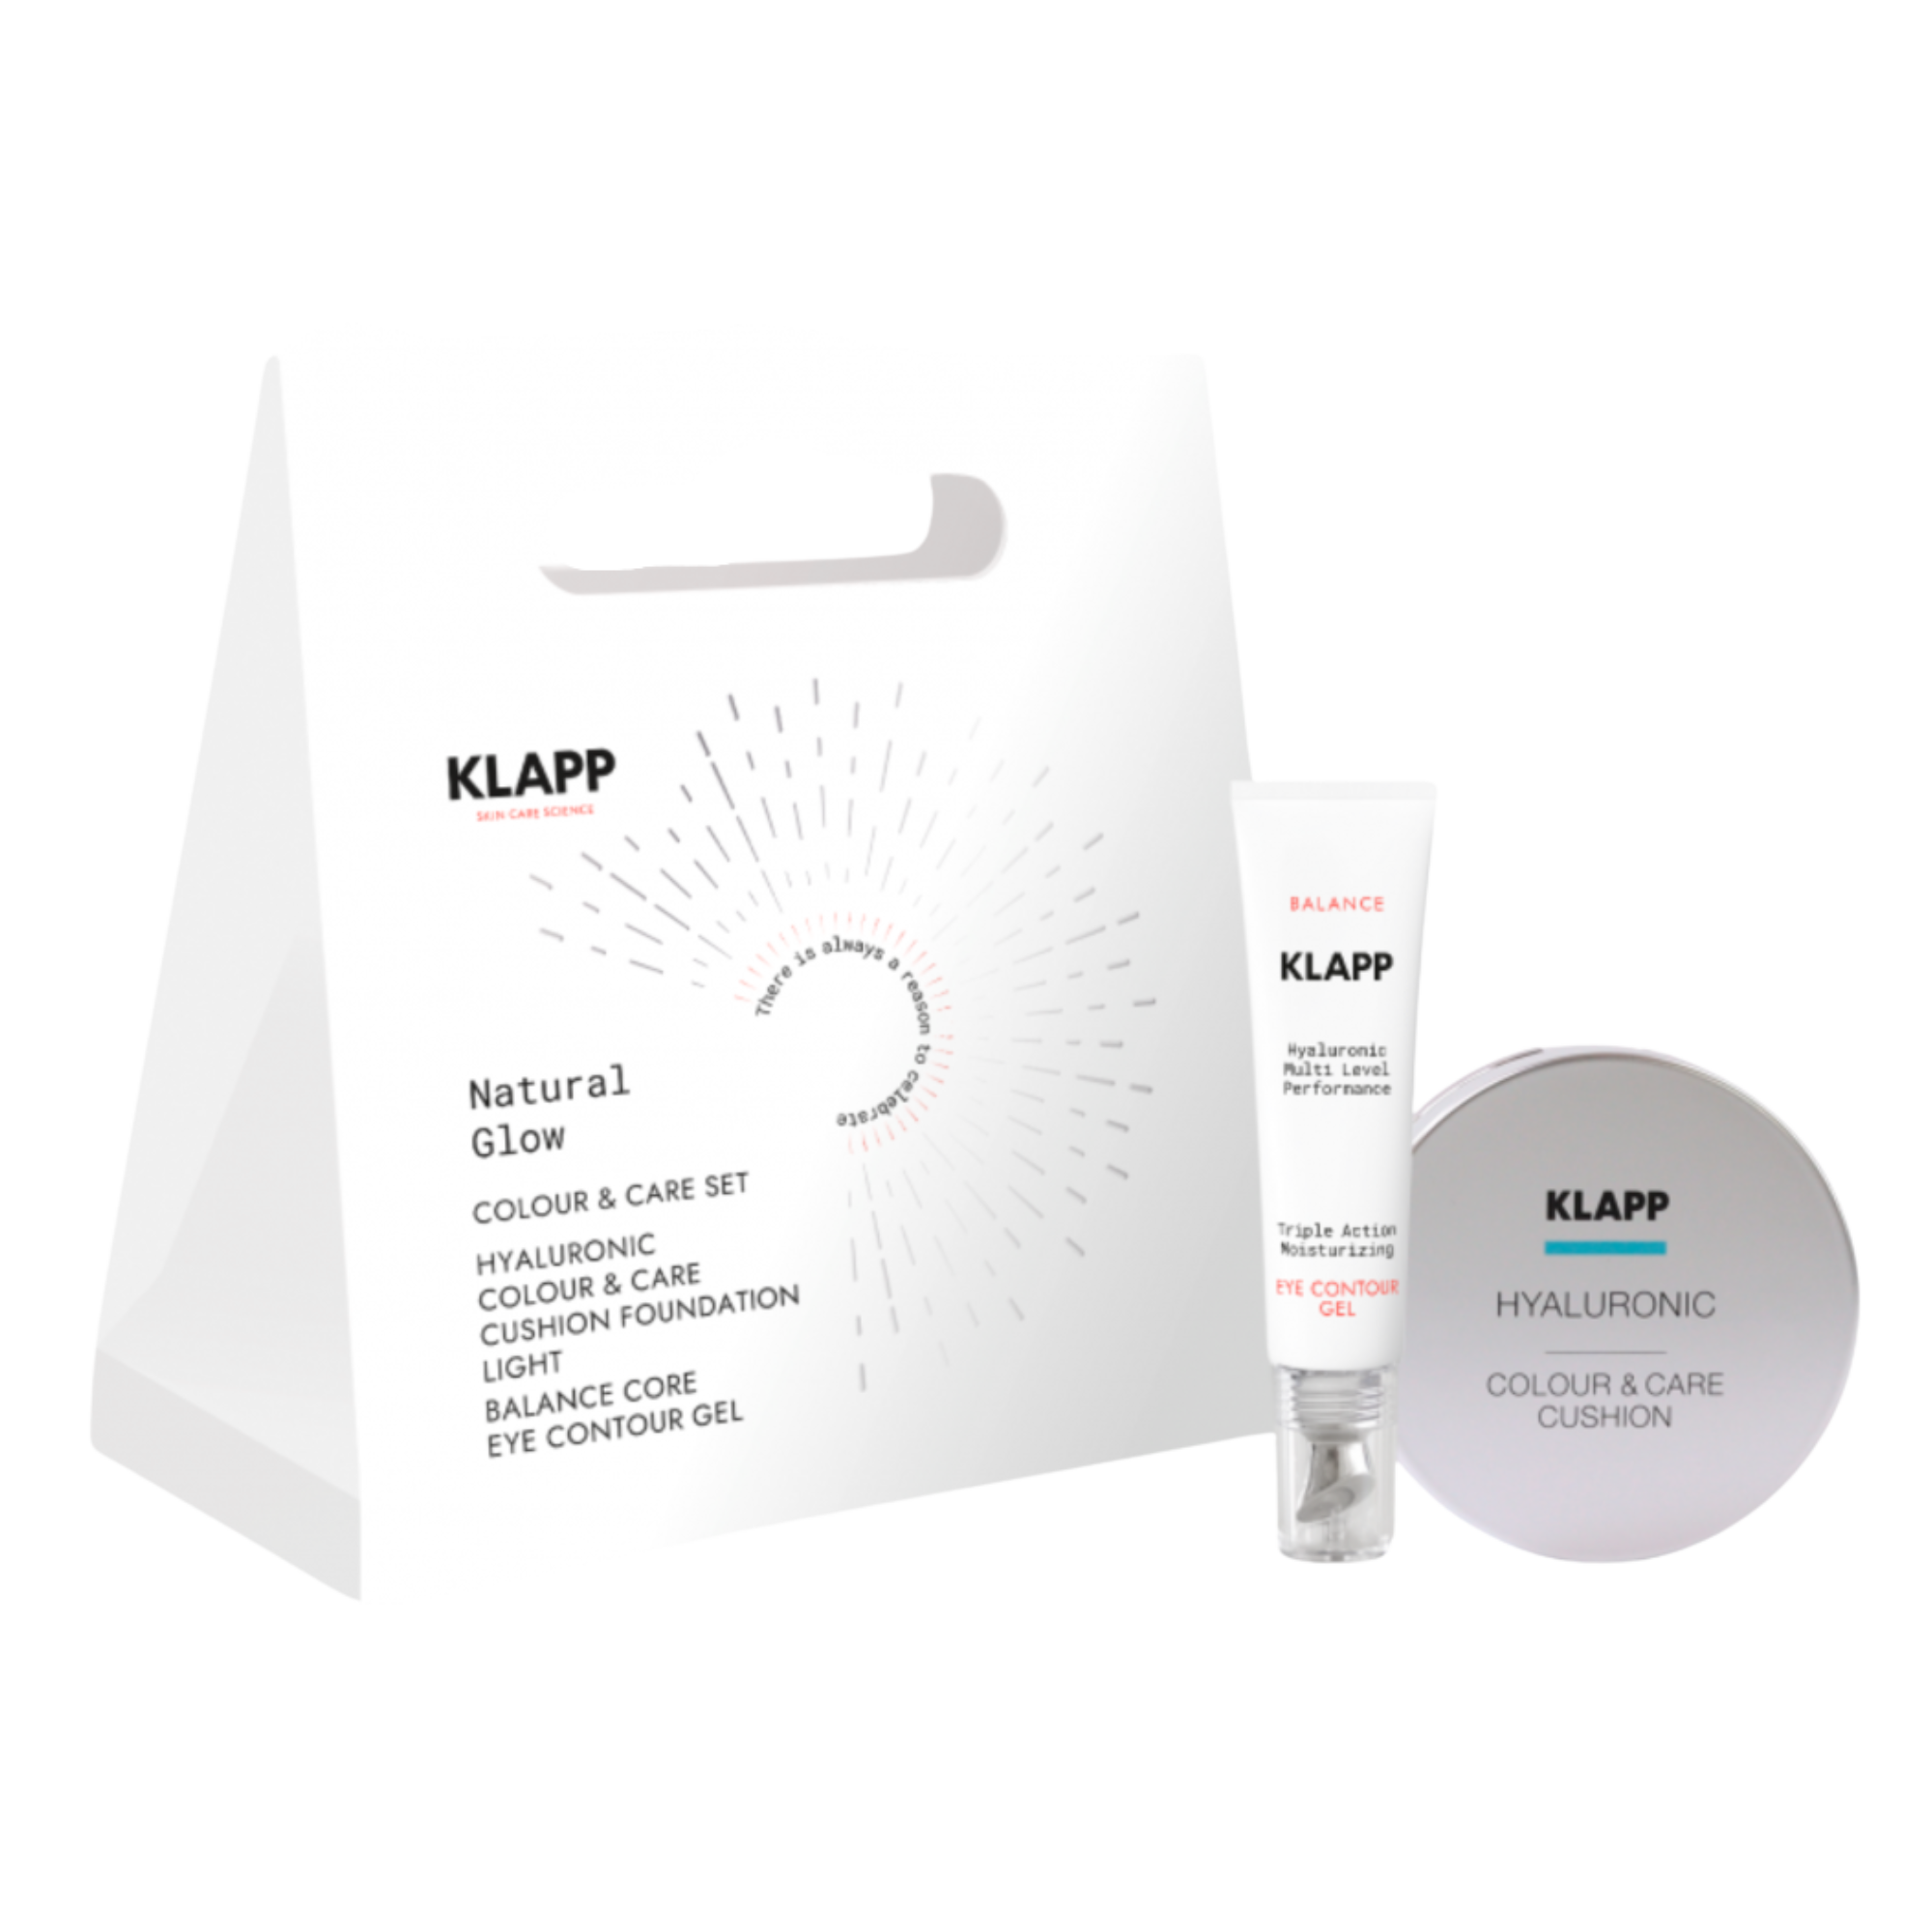 Набор: увлажняющая легкая основа для лица Klapp Natural Glow, 15 мл набор крем для лица увлажняющий klapp hyaluronic 15 мл